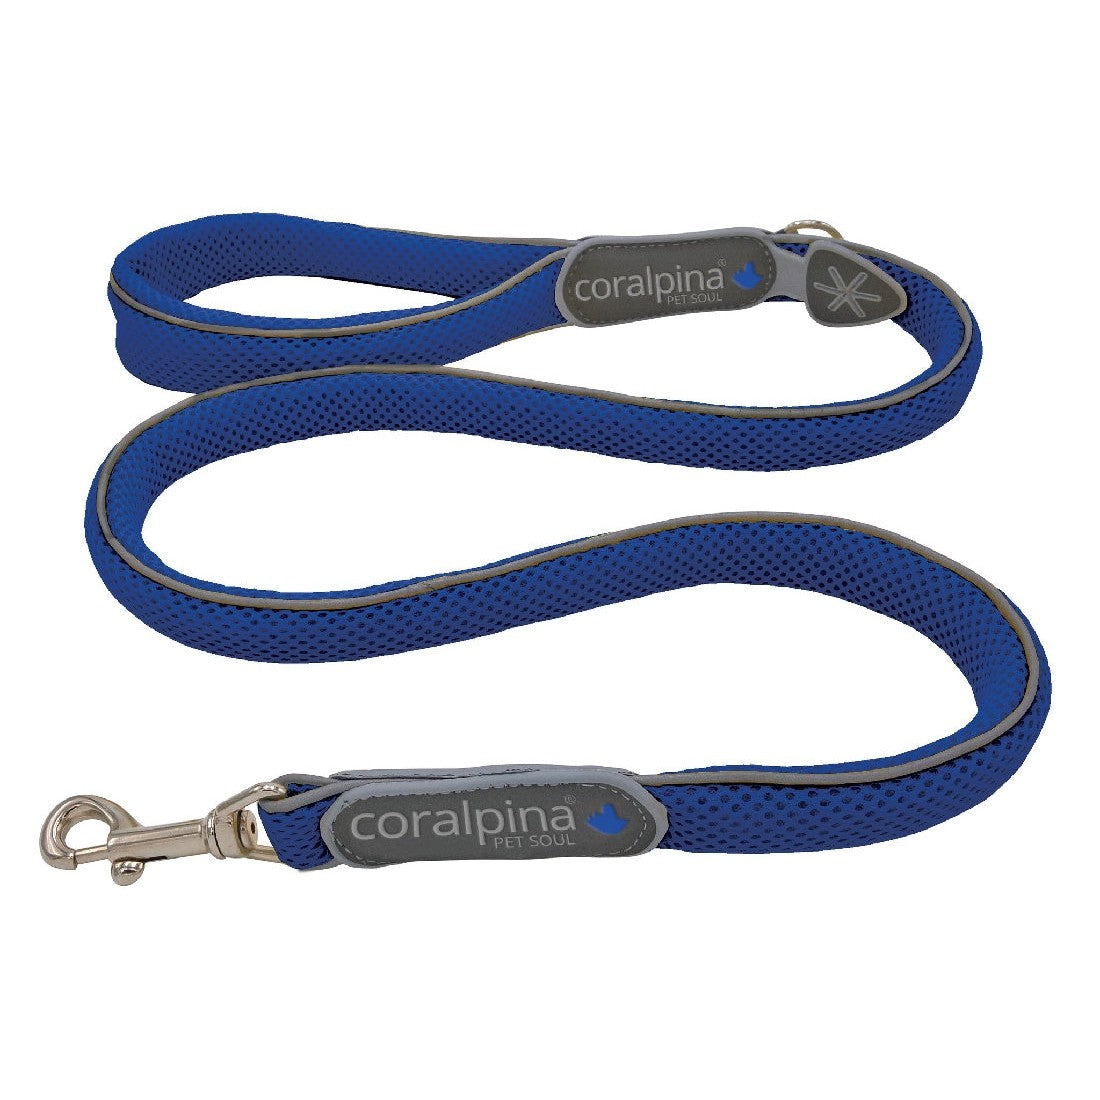 Coralpina Dog Leash Cinquetorri Electric Blue-Ascot Saddlery-The Equestrian